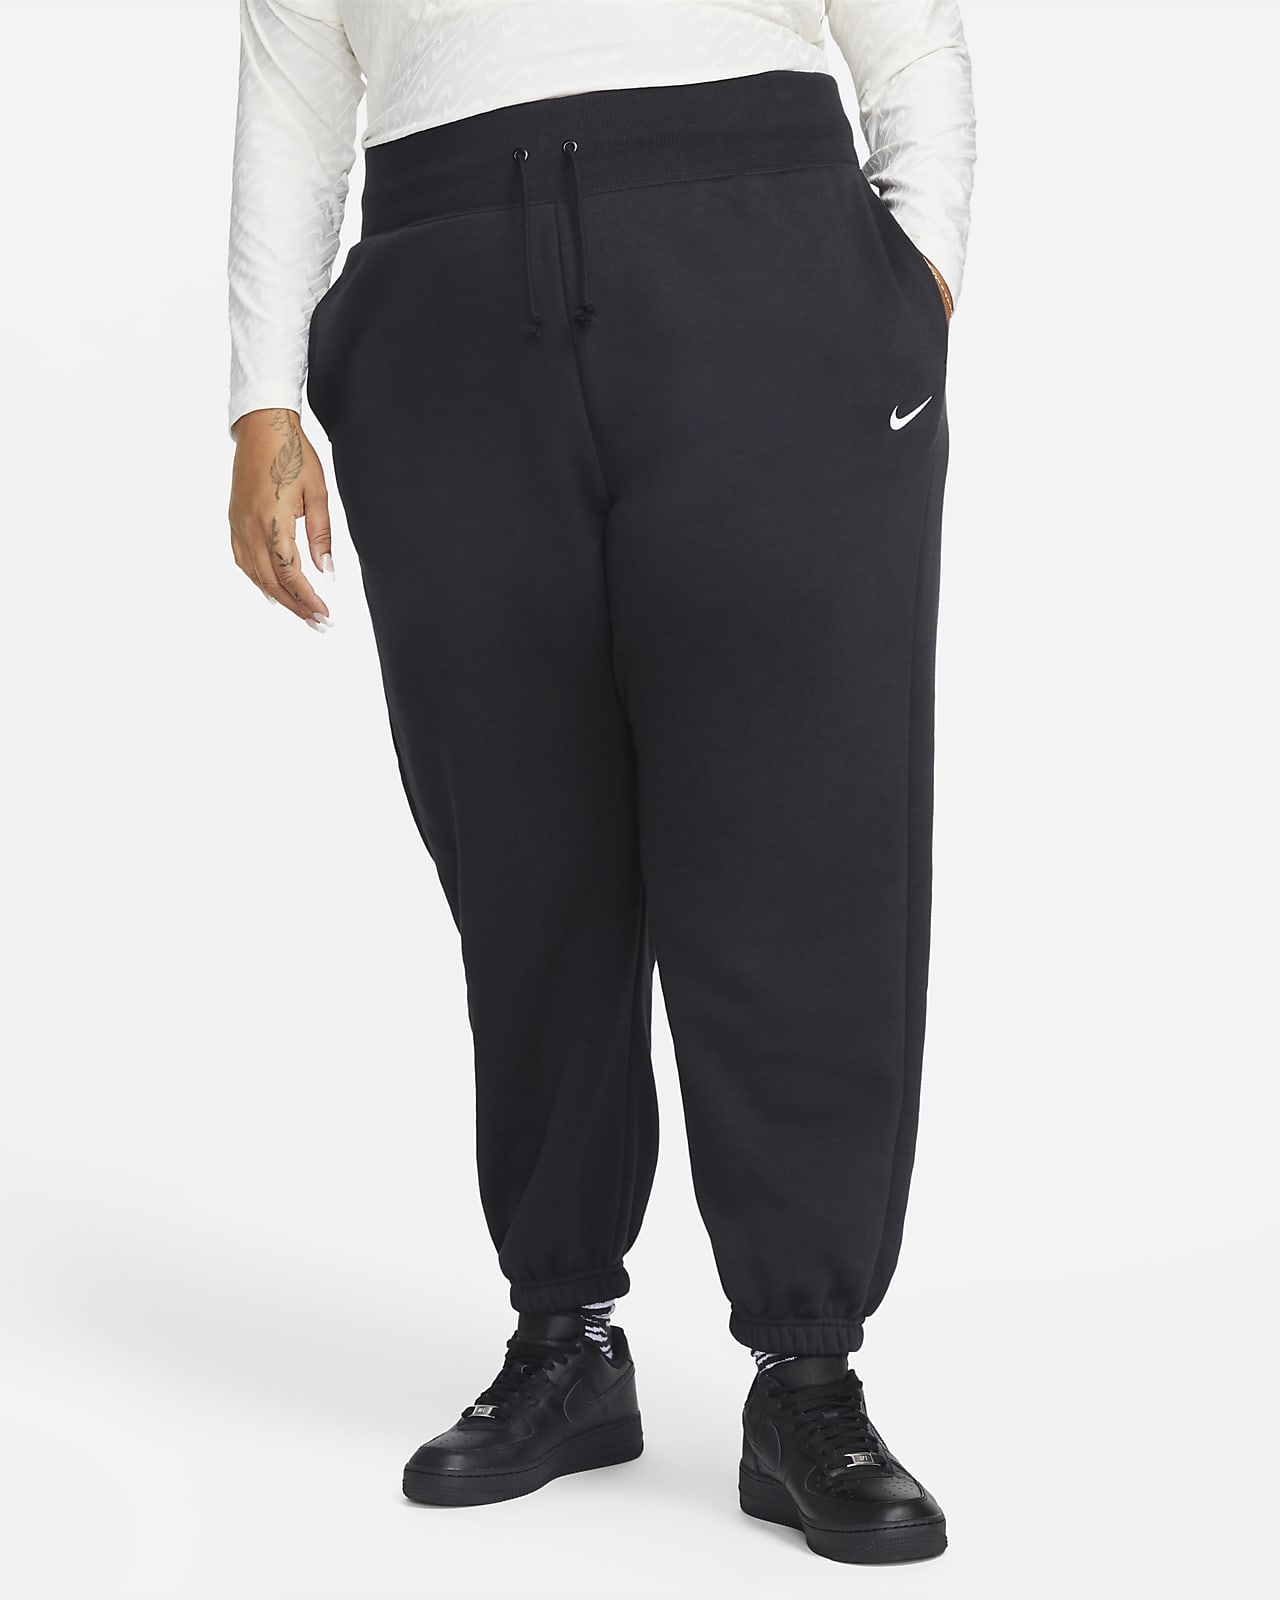 Γυναικείο ψηλόμεσο παντελόνι φόρμας σε φαρδιά γραμμή Nike Sportswear Phoenix Fleece (μεγάλα μεγέθη)